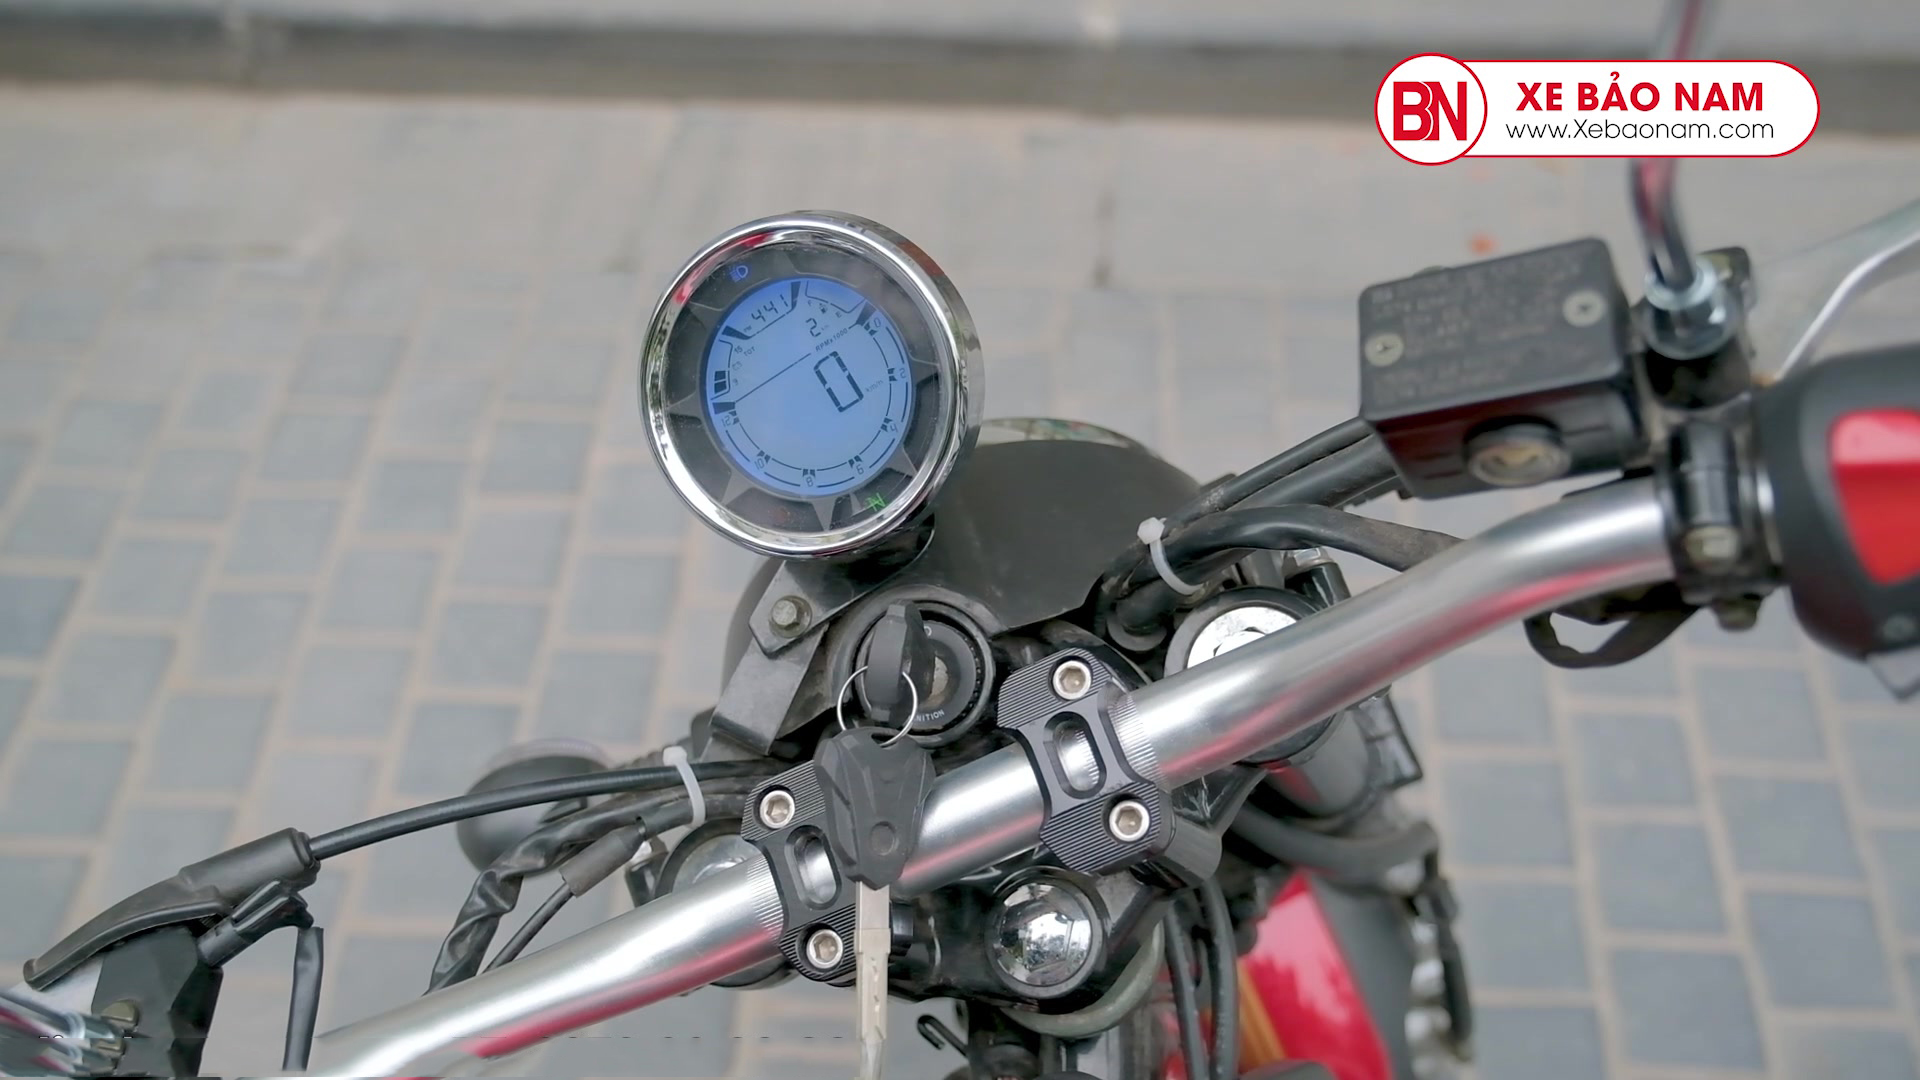 Đồng hồ hiển thị xe máy 110cc duacti hunter 2022